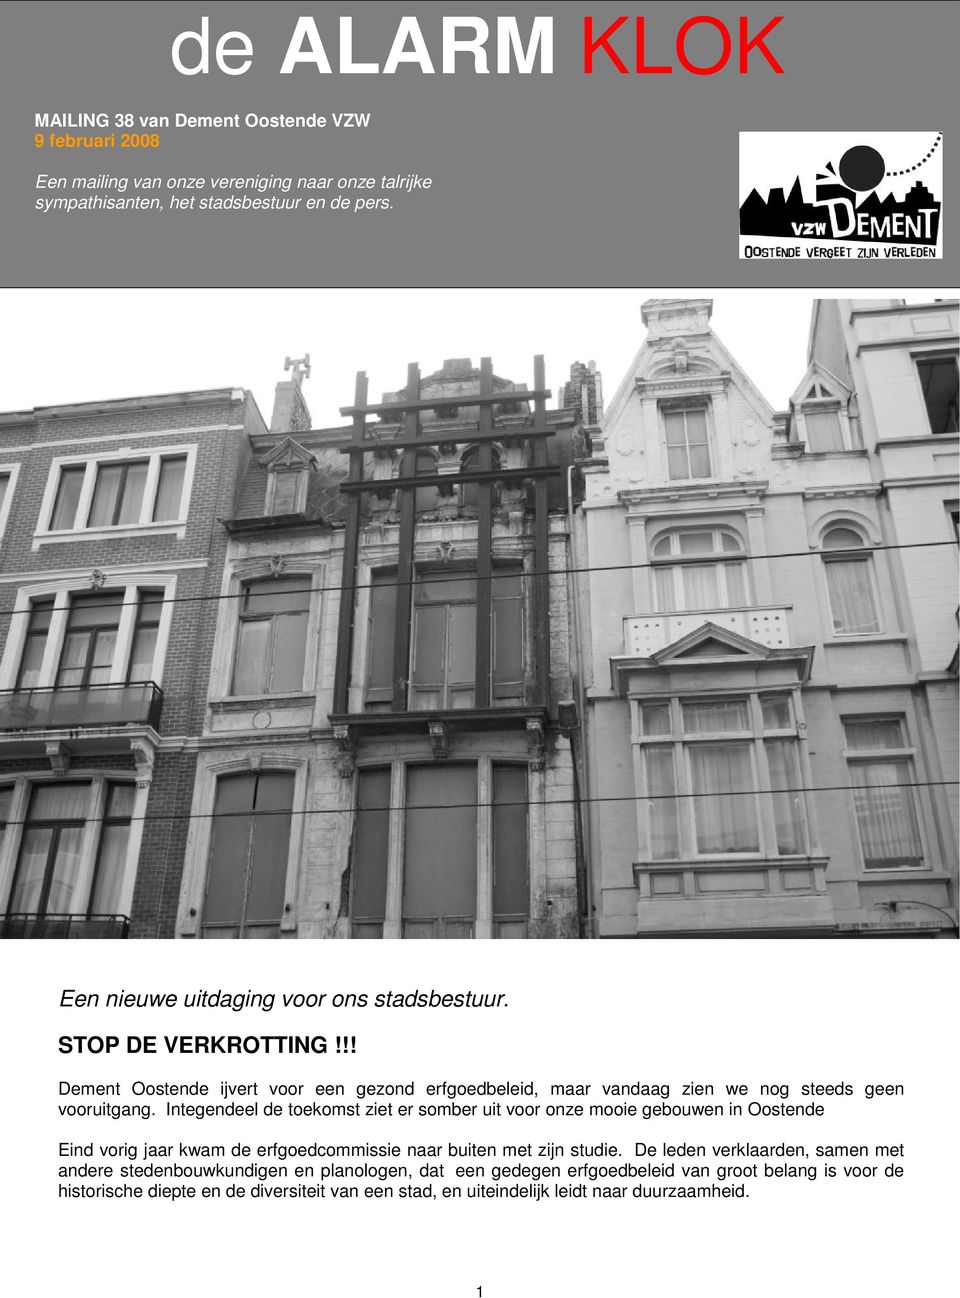 Integendeel de toekomst ziet er somber uit voor onze mooie gebouwen in Oostende Eind vorig jaar kwam de erfgoedcommissie naar buiten met zijn studie.